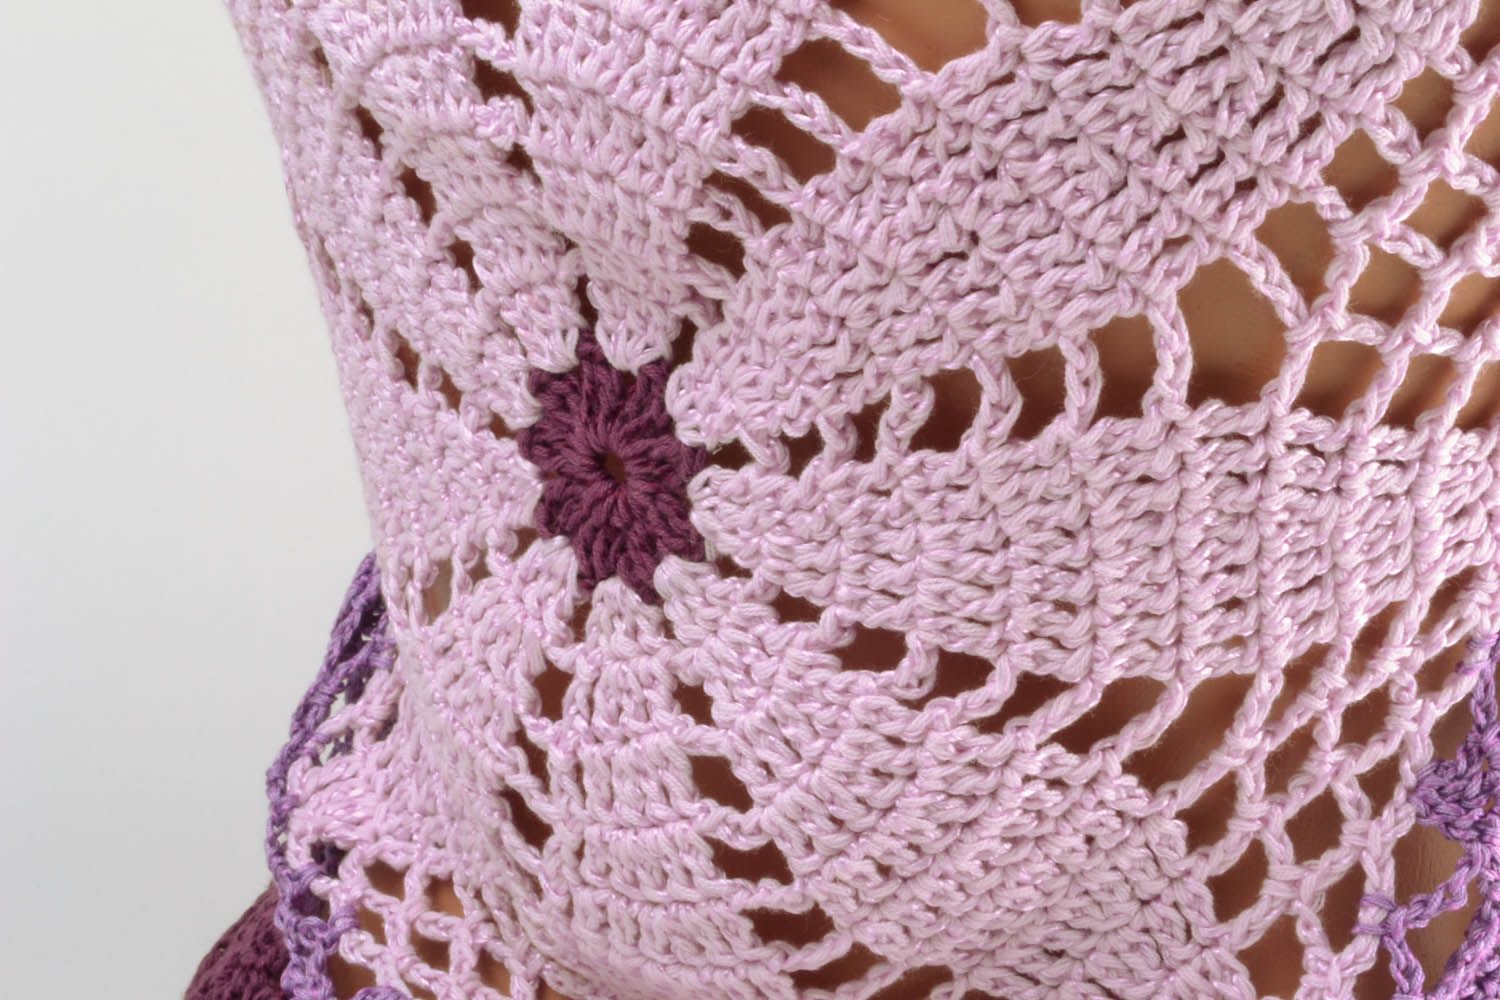 Violet crochet lace top photo 4